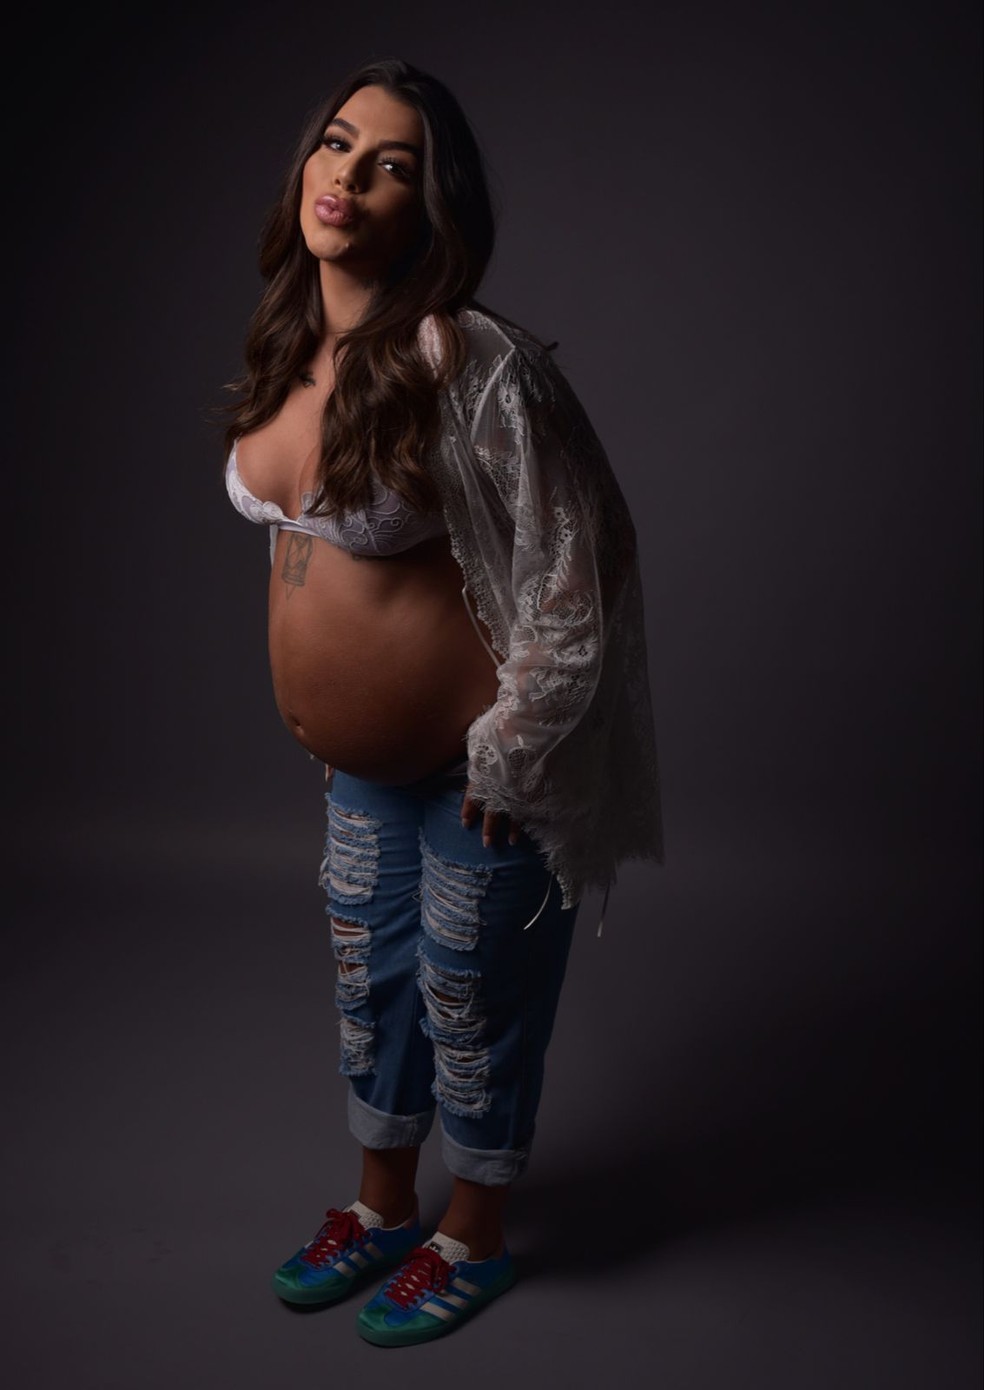 Petra Mattar fala de como mudou com a gravidez  — Foto: Ingryd Alves/ Divulgação 